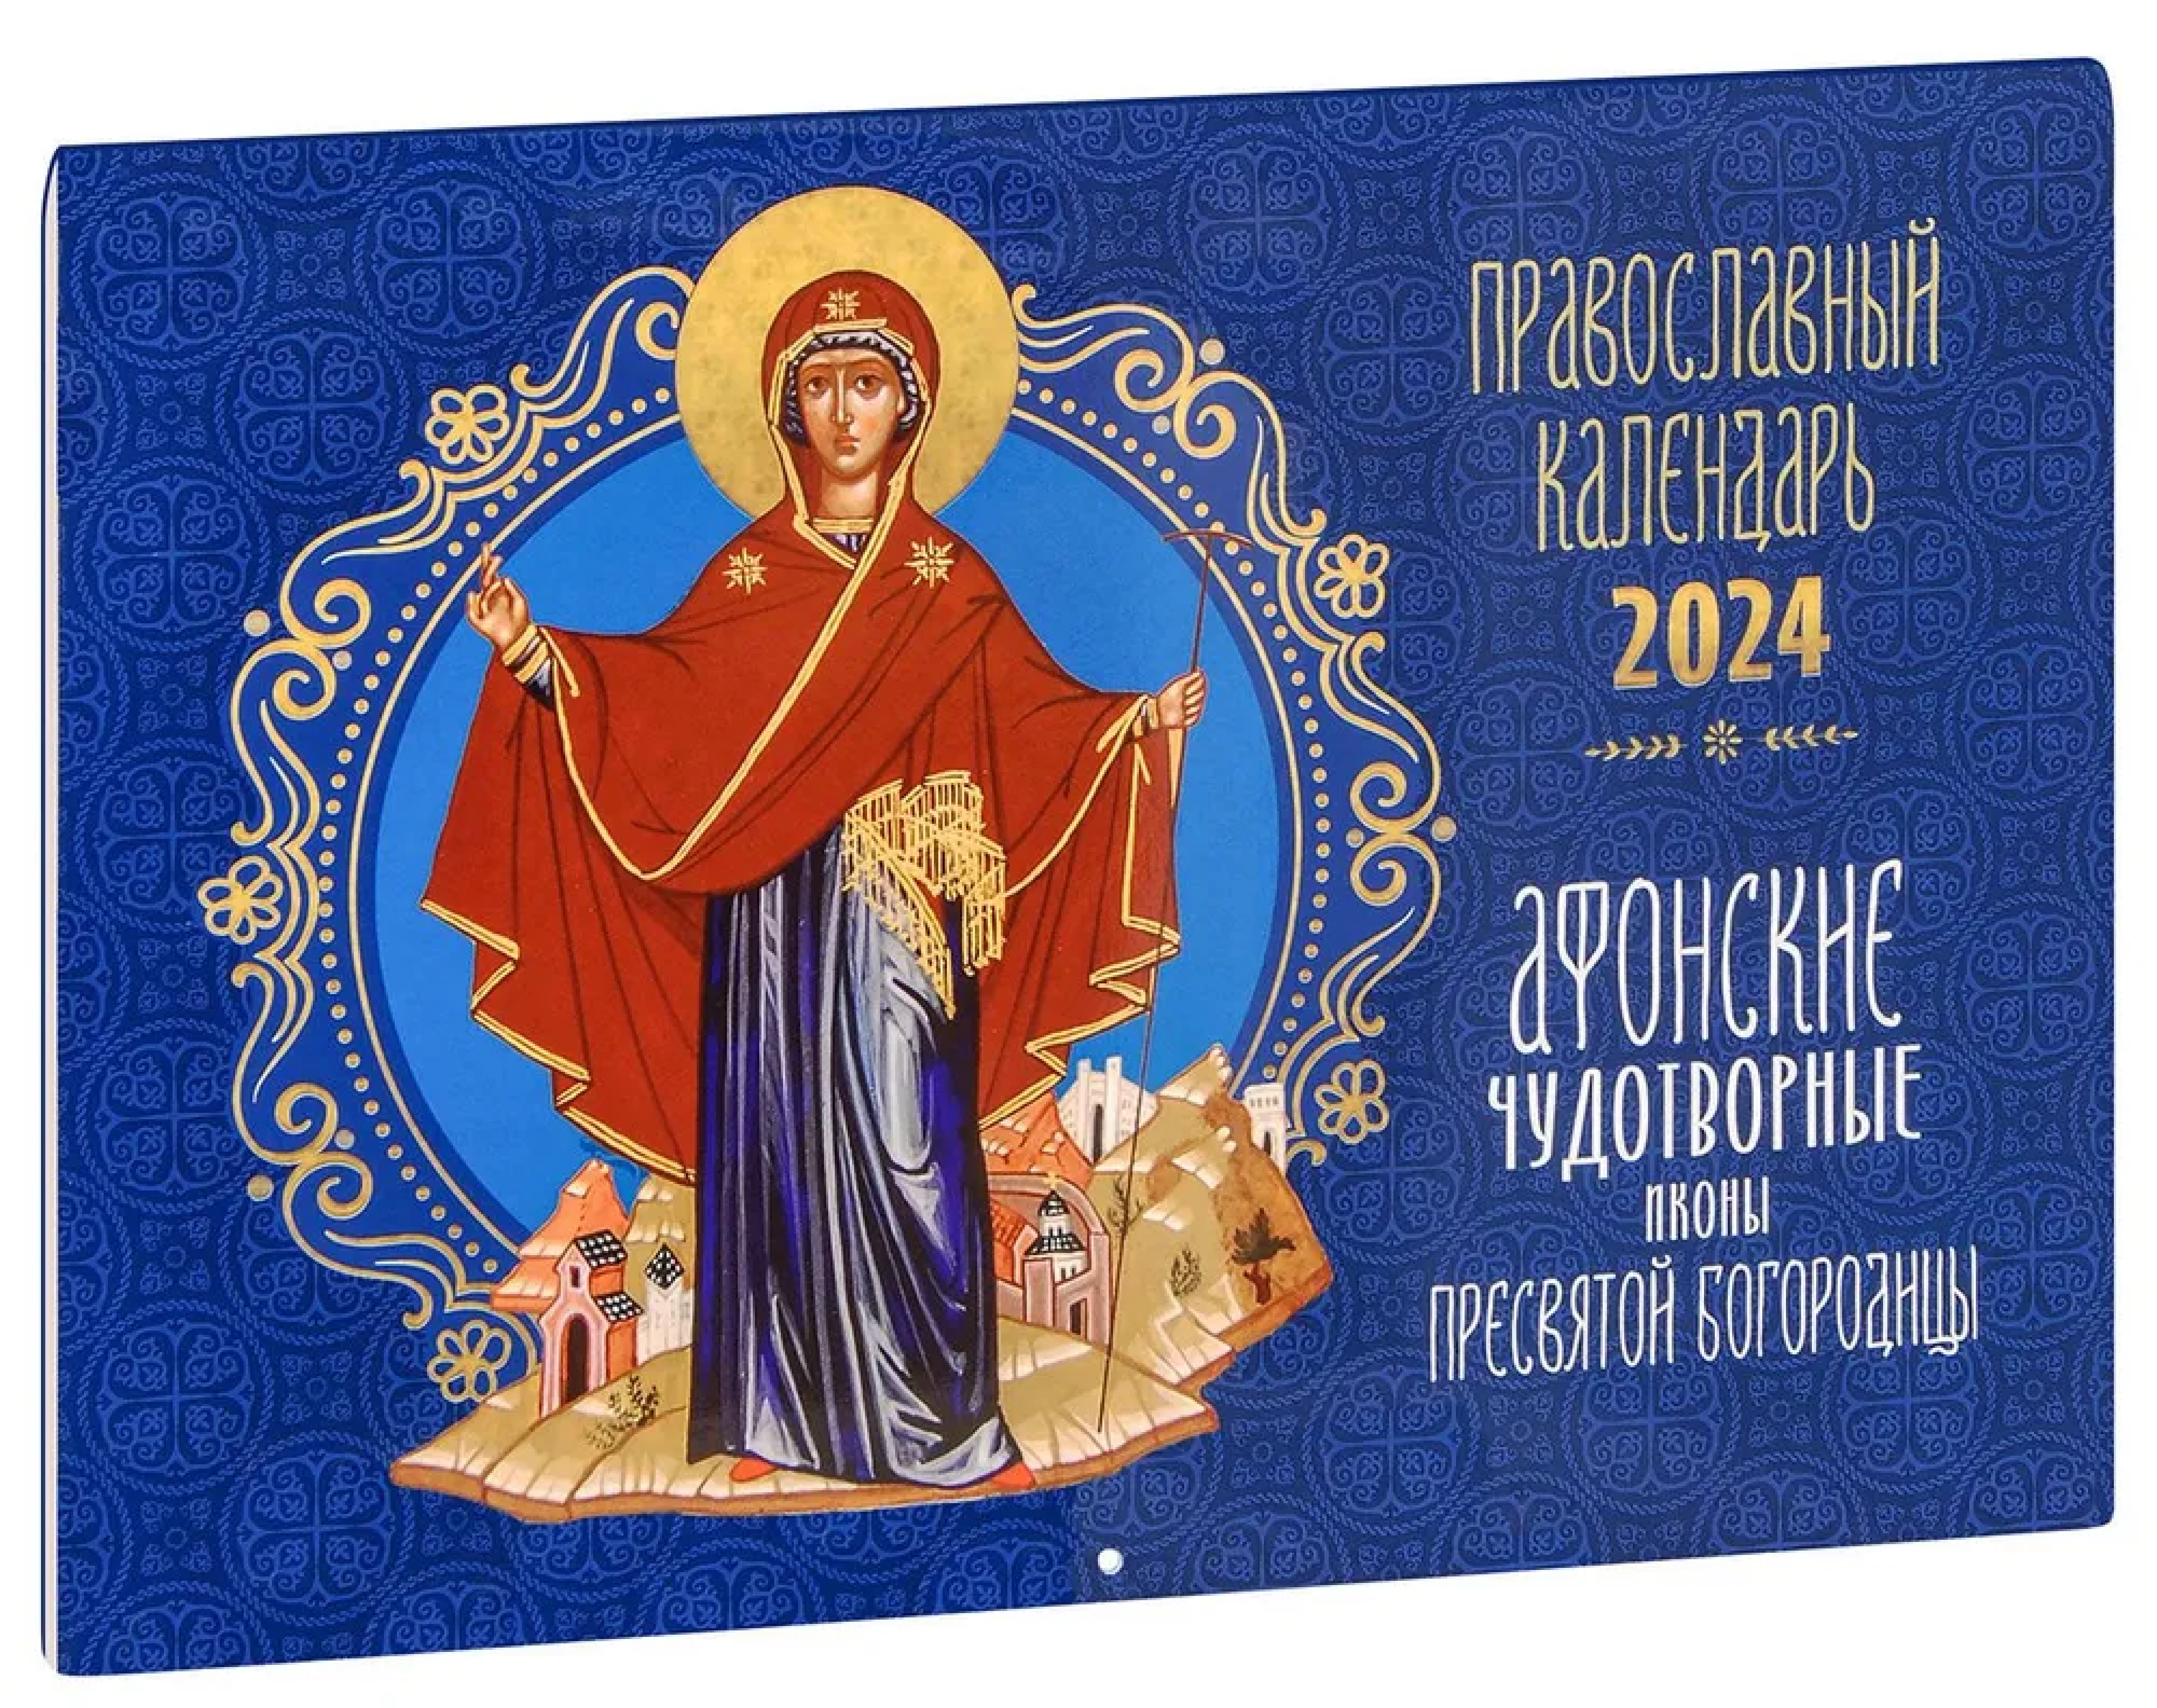 Православный календарь на 2024 год. Афонские чудотворные иконы Пресвятой Богородицы.